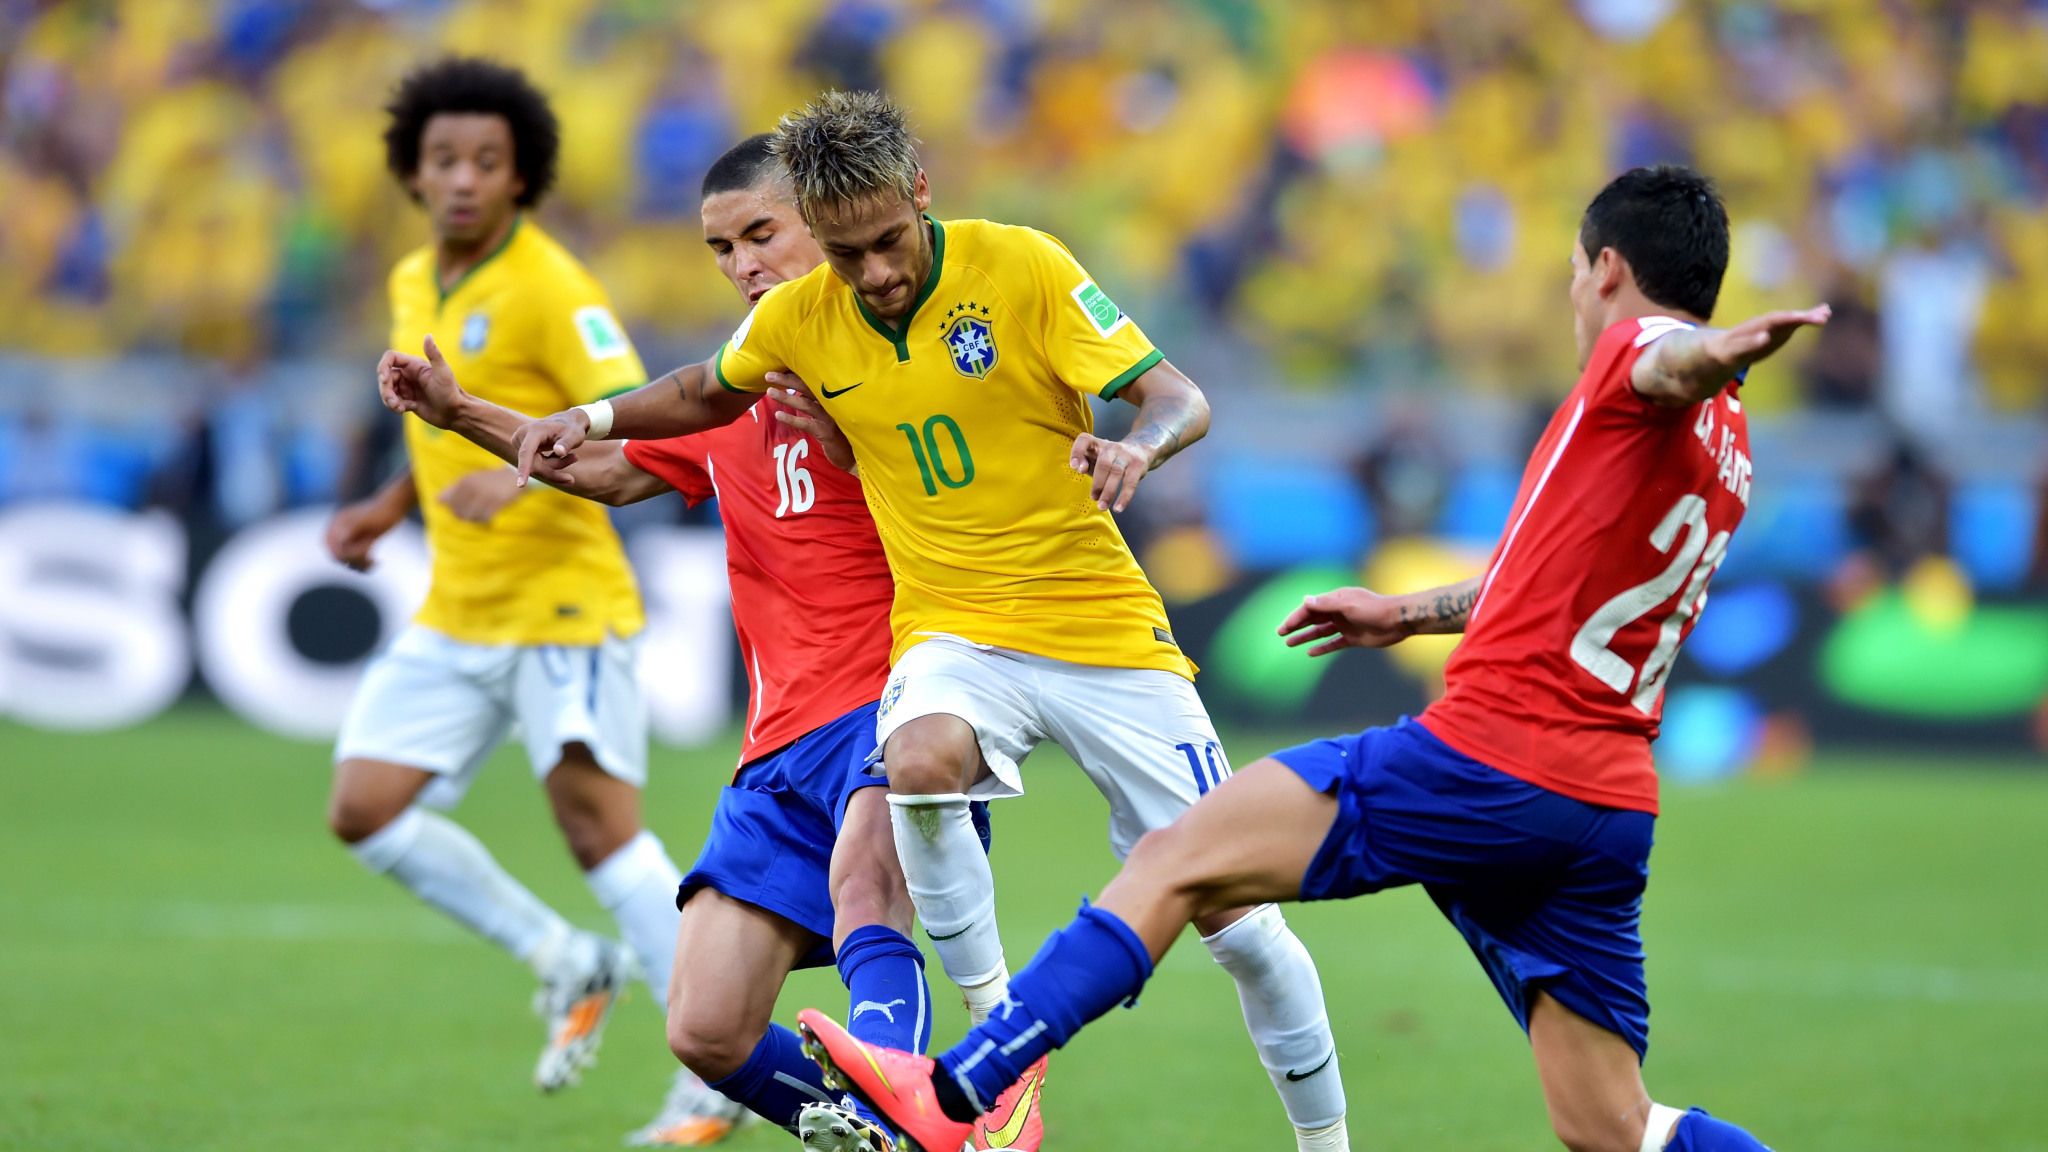 Страна современного футбола. Бразилия Чили 2014. Неймар сборная Бразилии 2014. Современный футбол. Бразилия футбол Неймар.